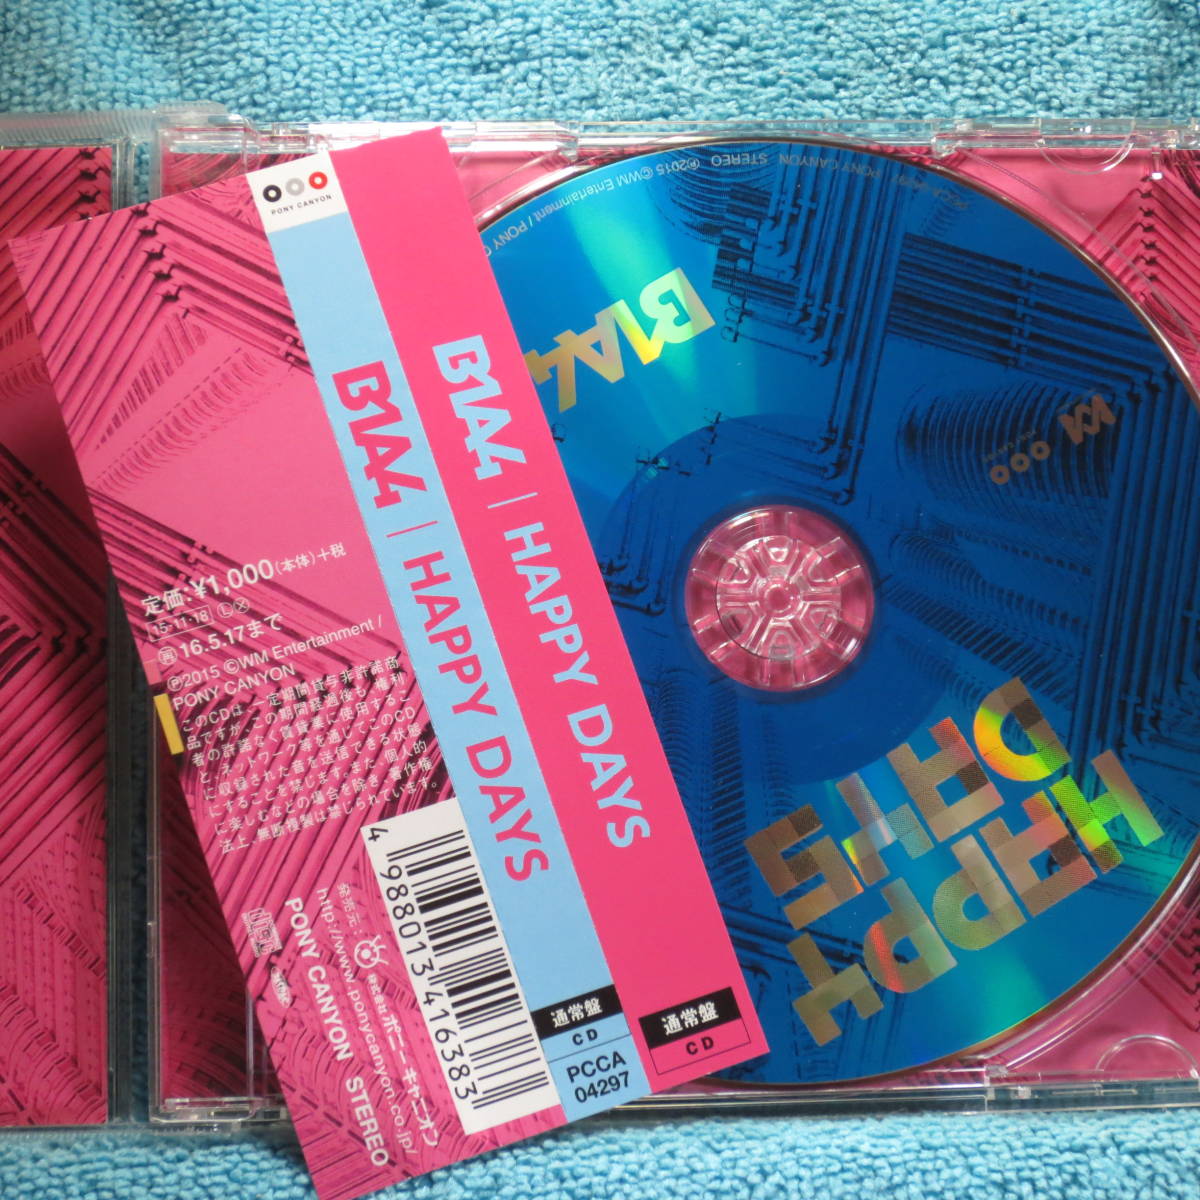 [CD] B1A4 /HAPPY DAYS 通常盤 ☆ディスク美品/帯付き_画像2